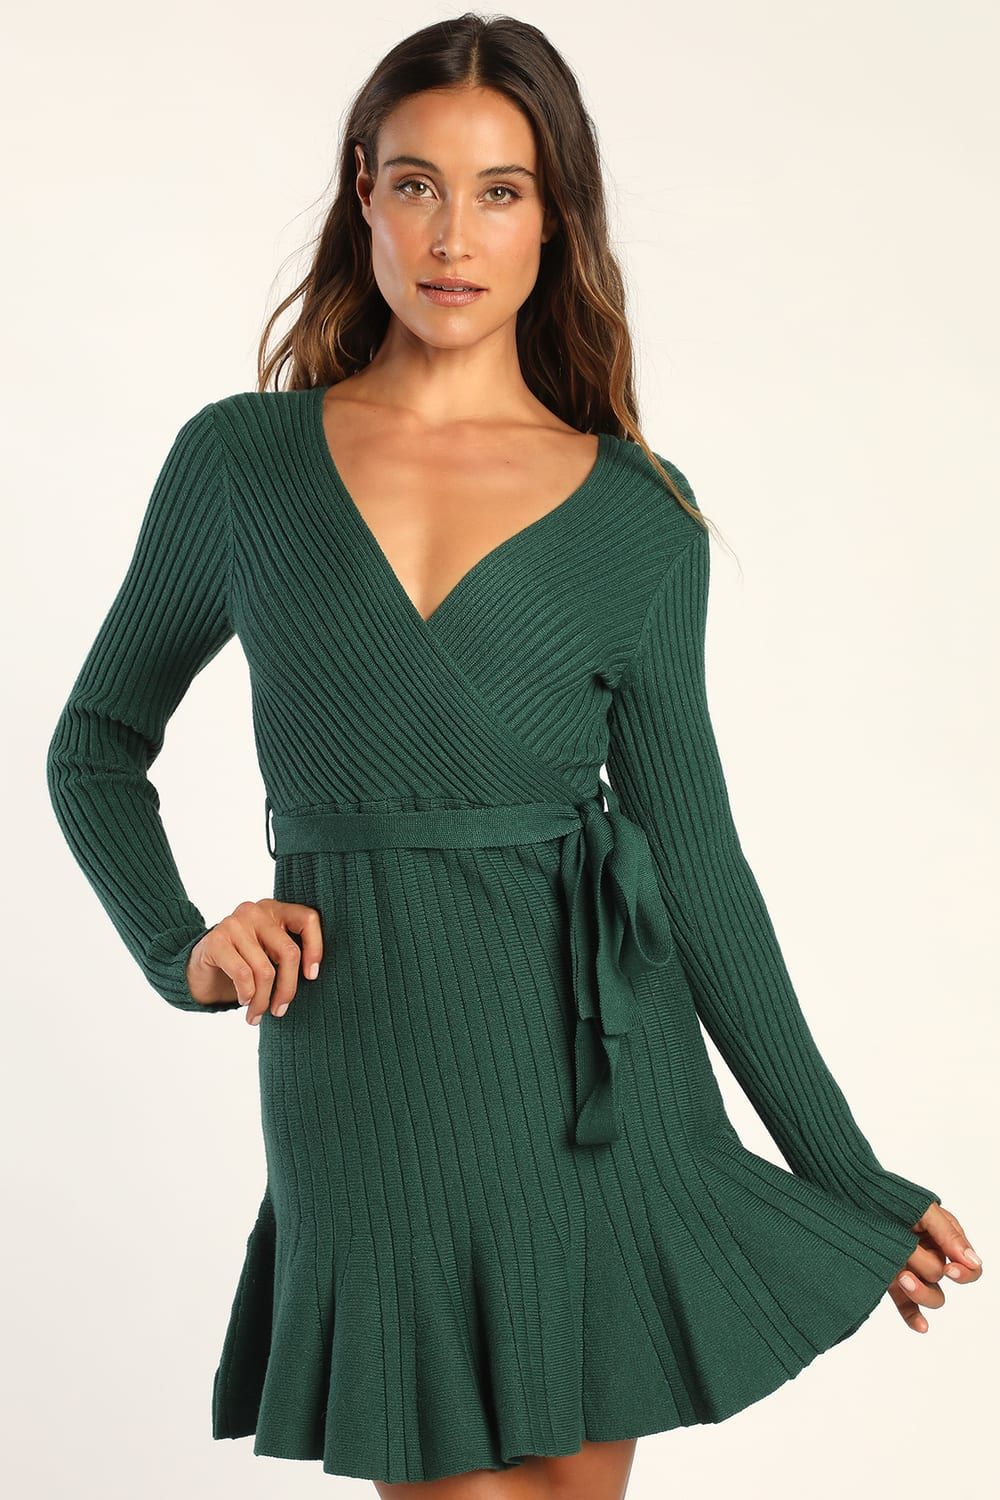 Warm Emotions Emerald Green Skater Mini Sweater Dress | Lulus (US)